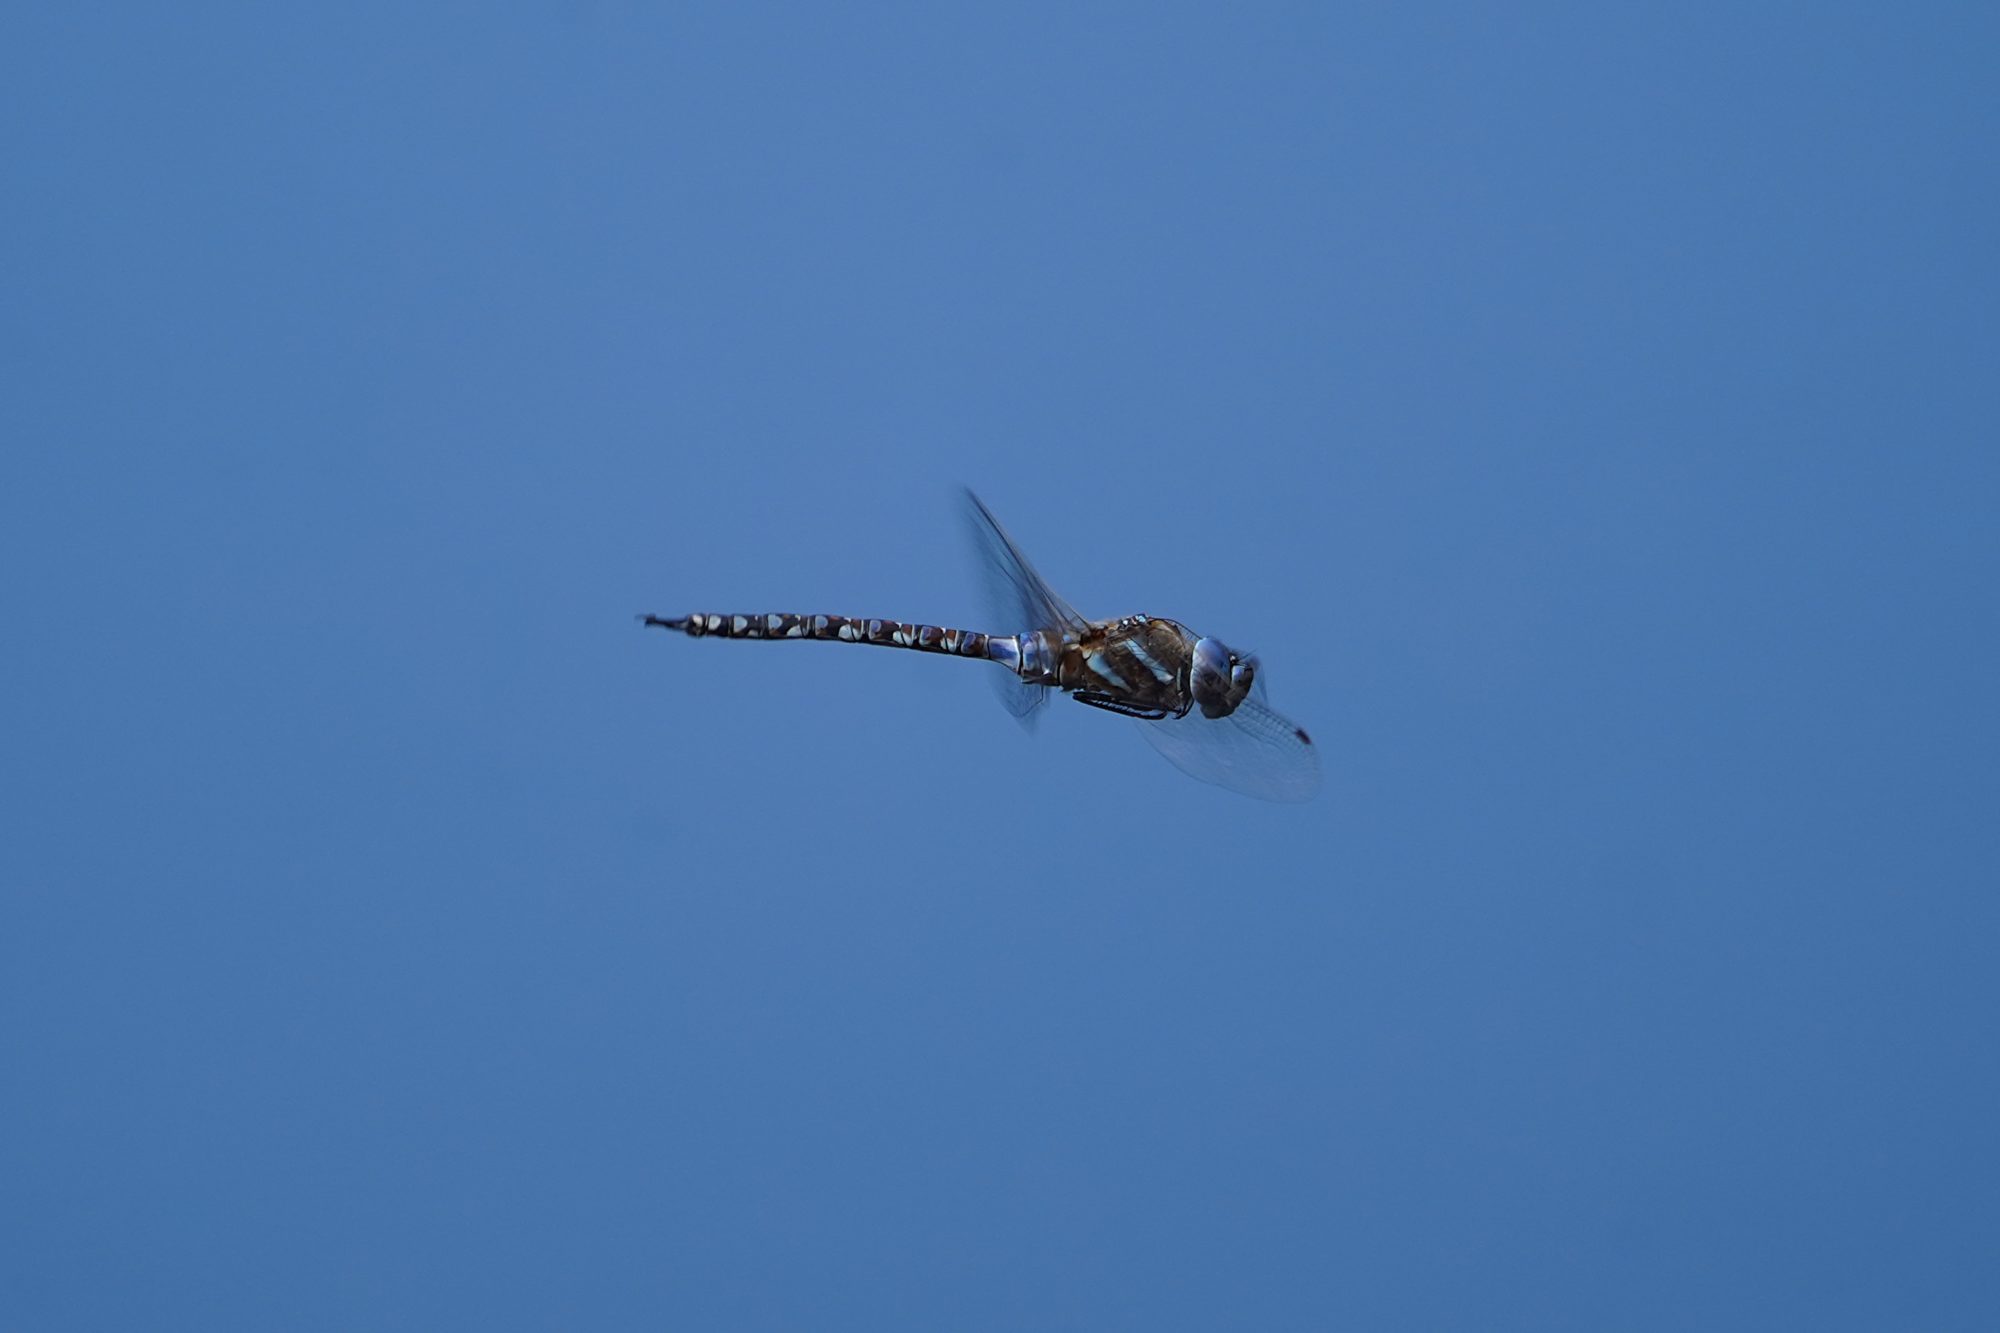 A Mosaic Darner dragonfly in flight